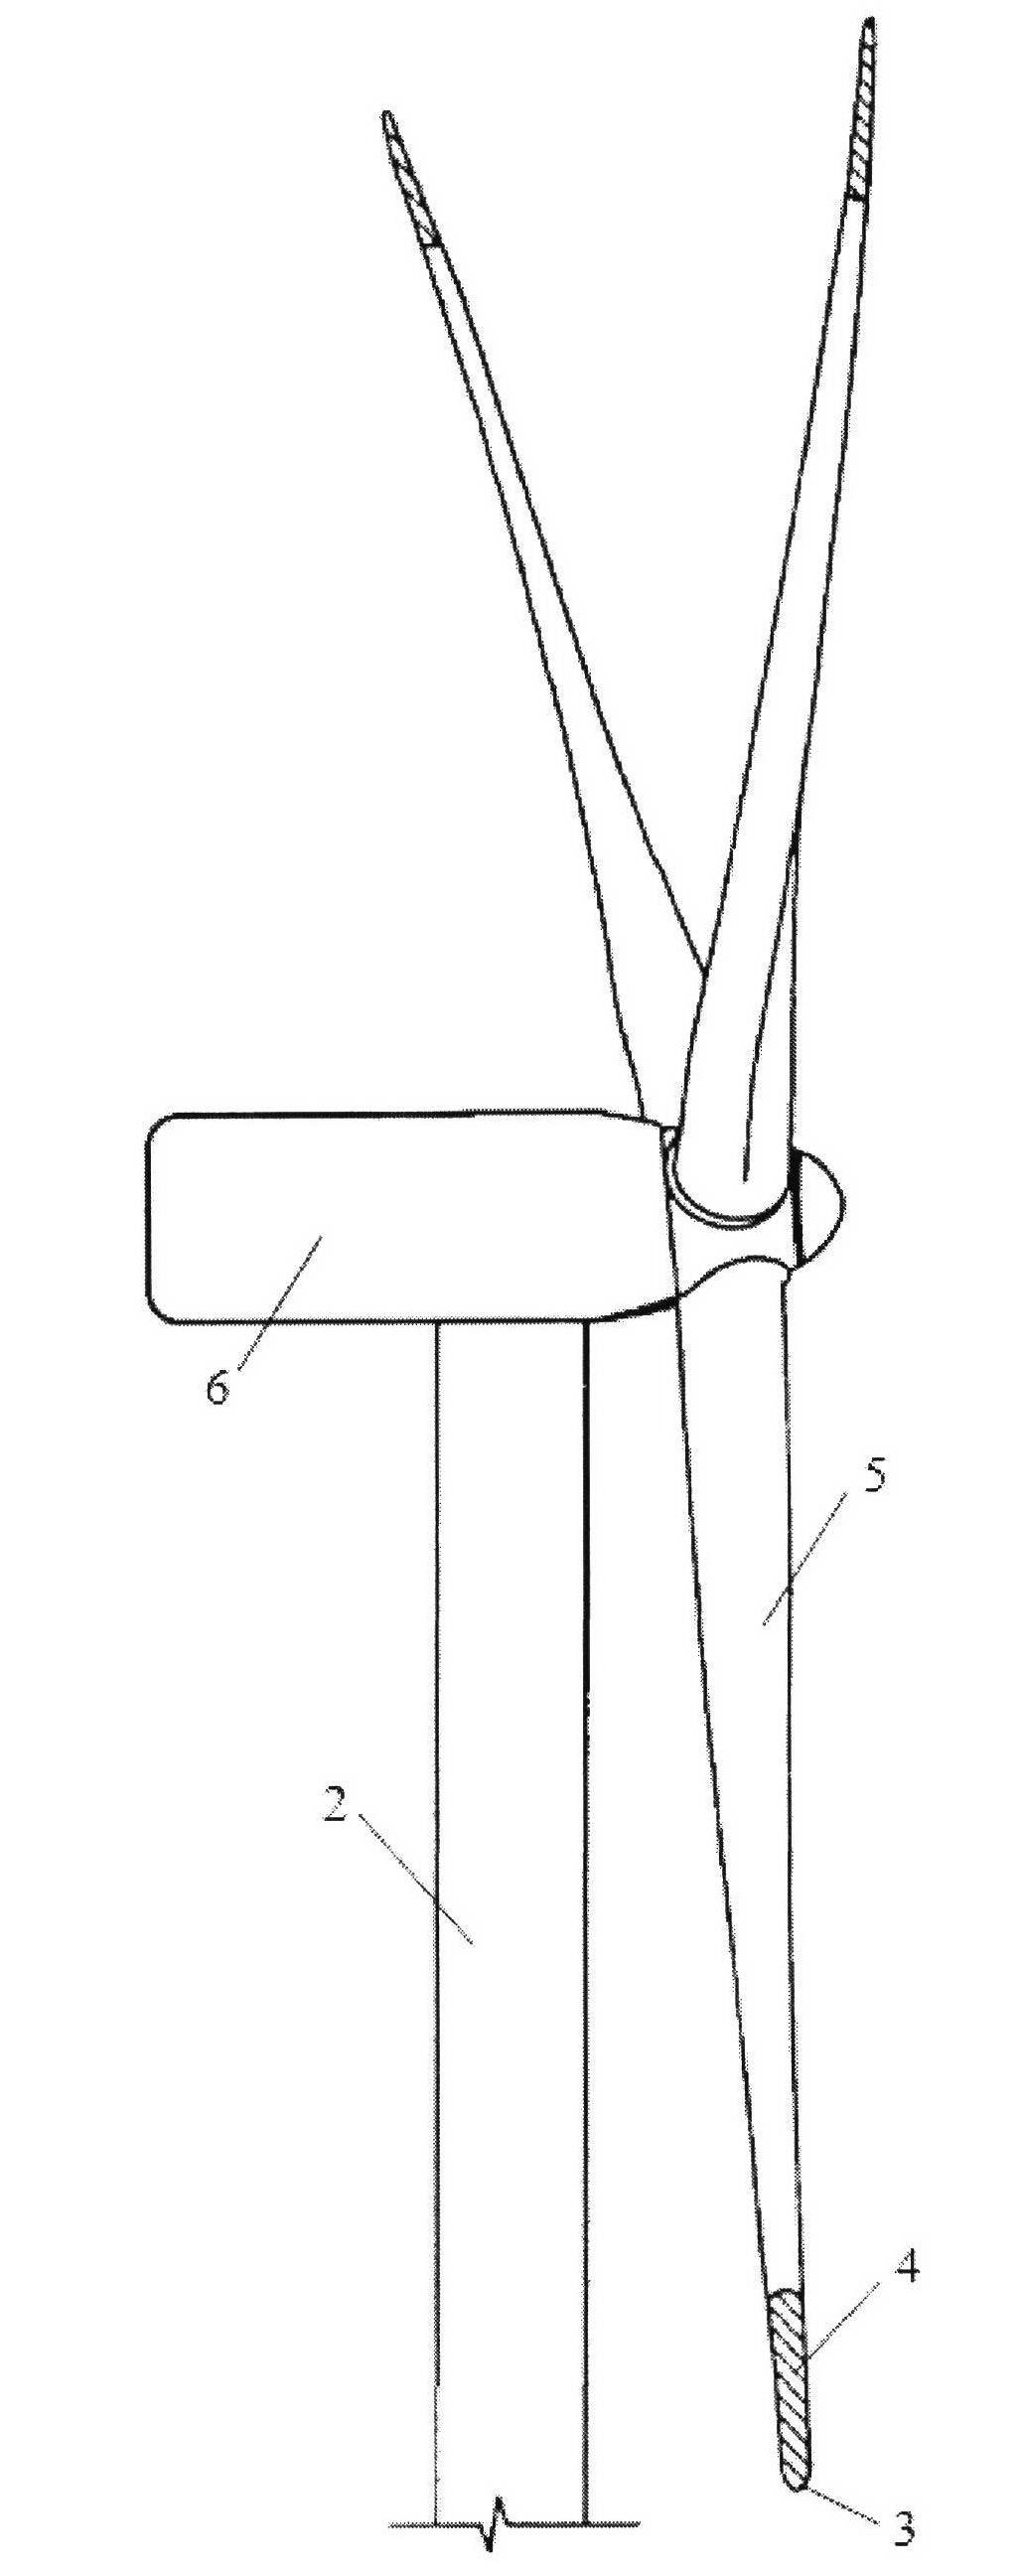 Method for lengthening wind power blade